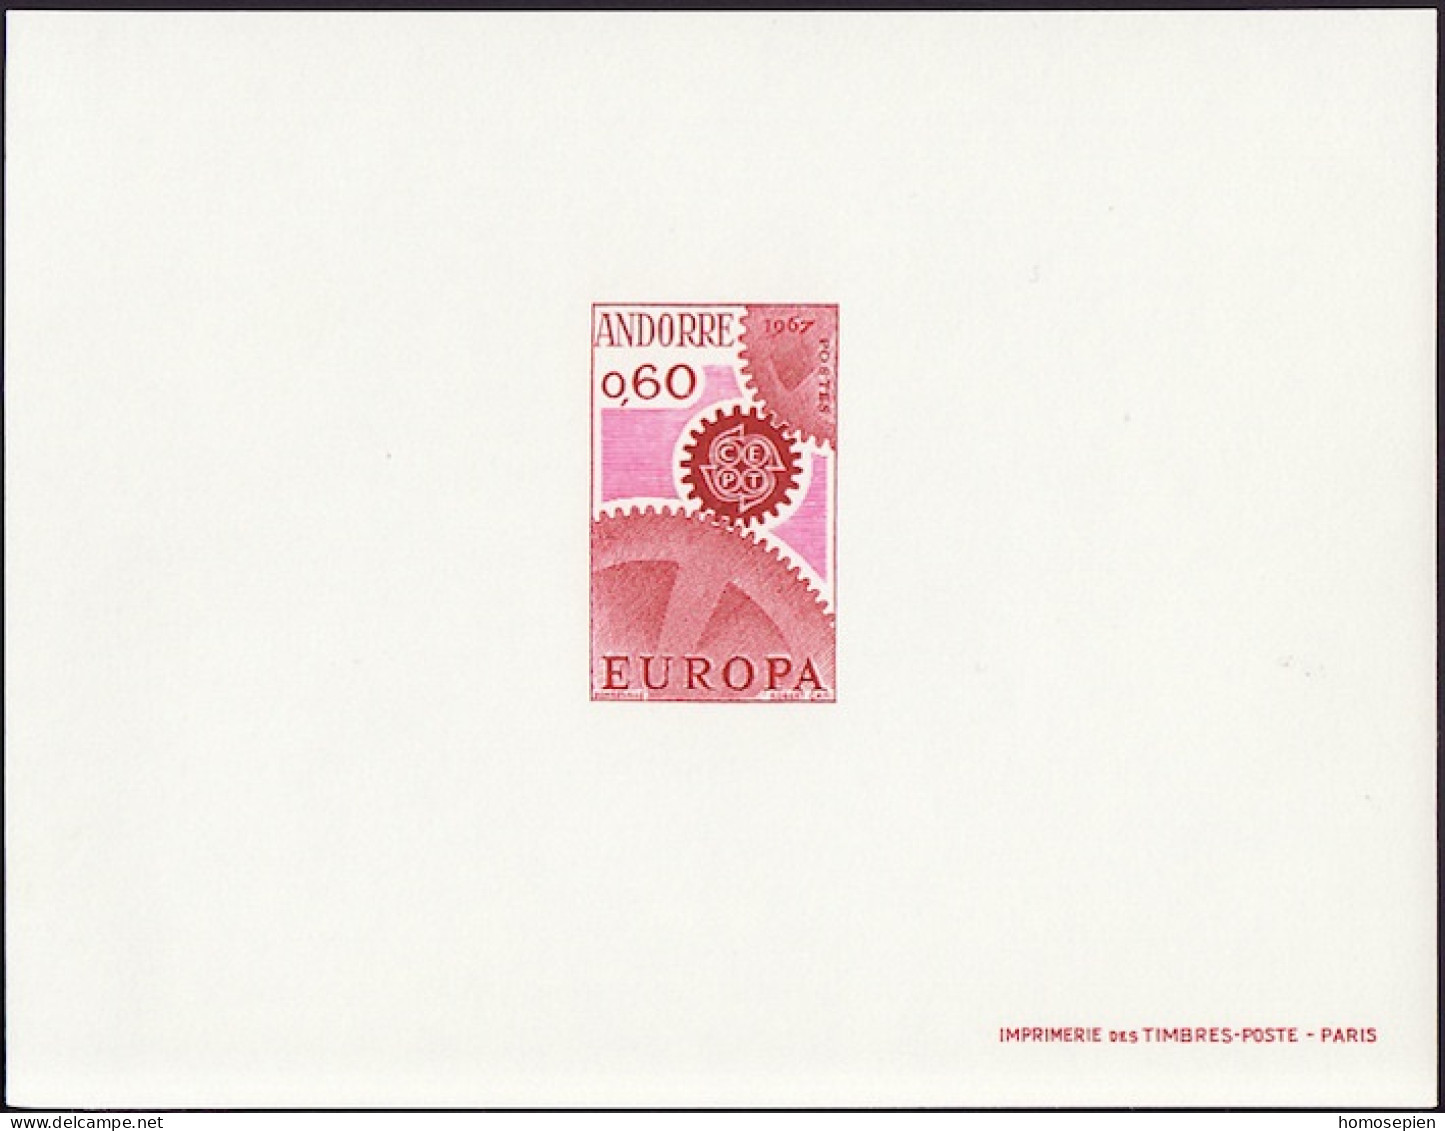 Andorre Français - Andorra épreuve 1967 Y&T N°EL180 - Michel N°DP200 *** - 60c EUROPA - Covers & Documents